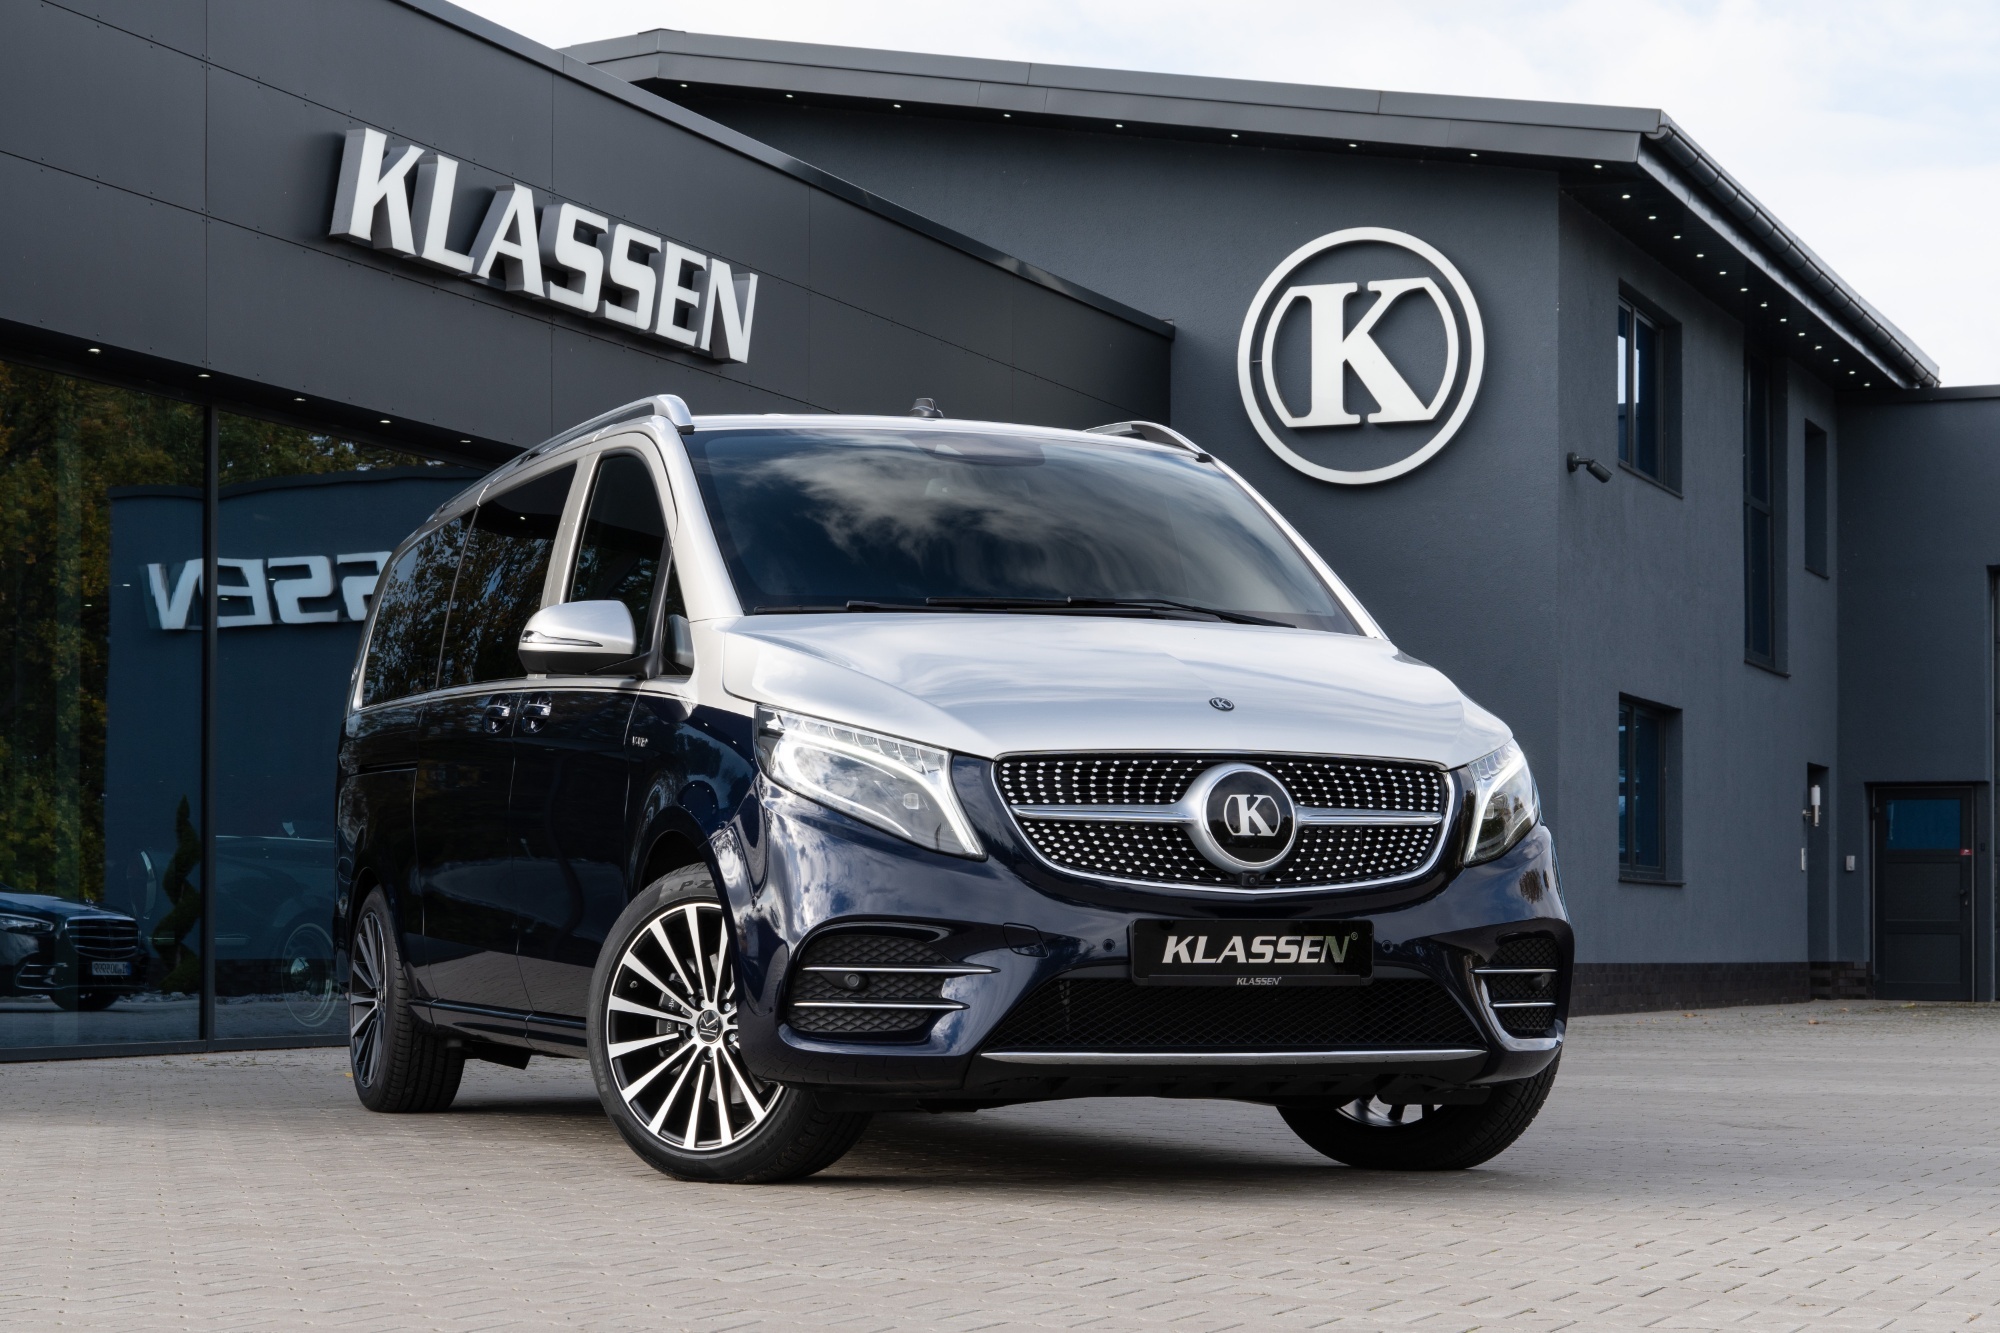 MVV_1444 ▻ V-Class V300 AMG Limited Luxury VIP Van for sale - German  Manufacture and Design - KLASSEN